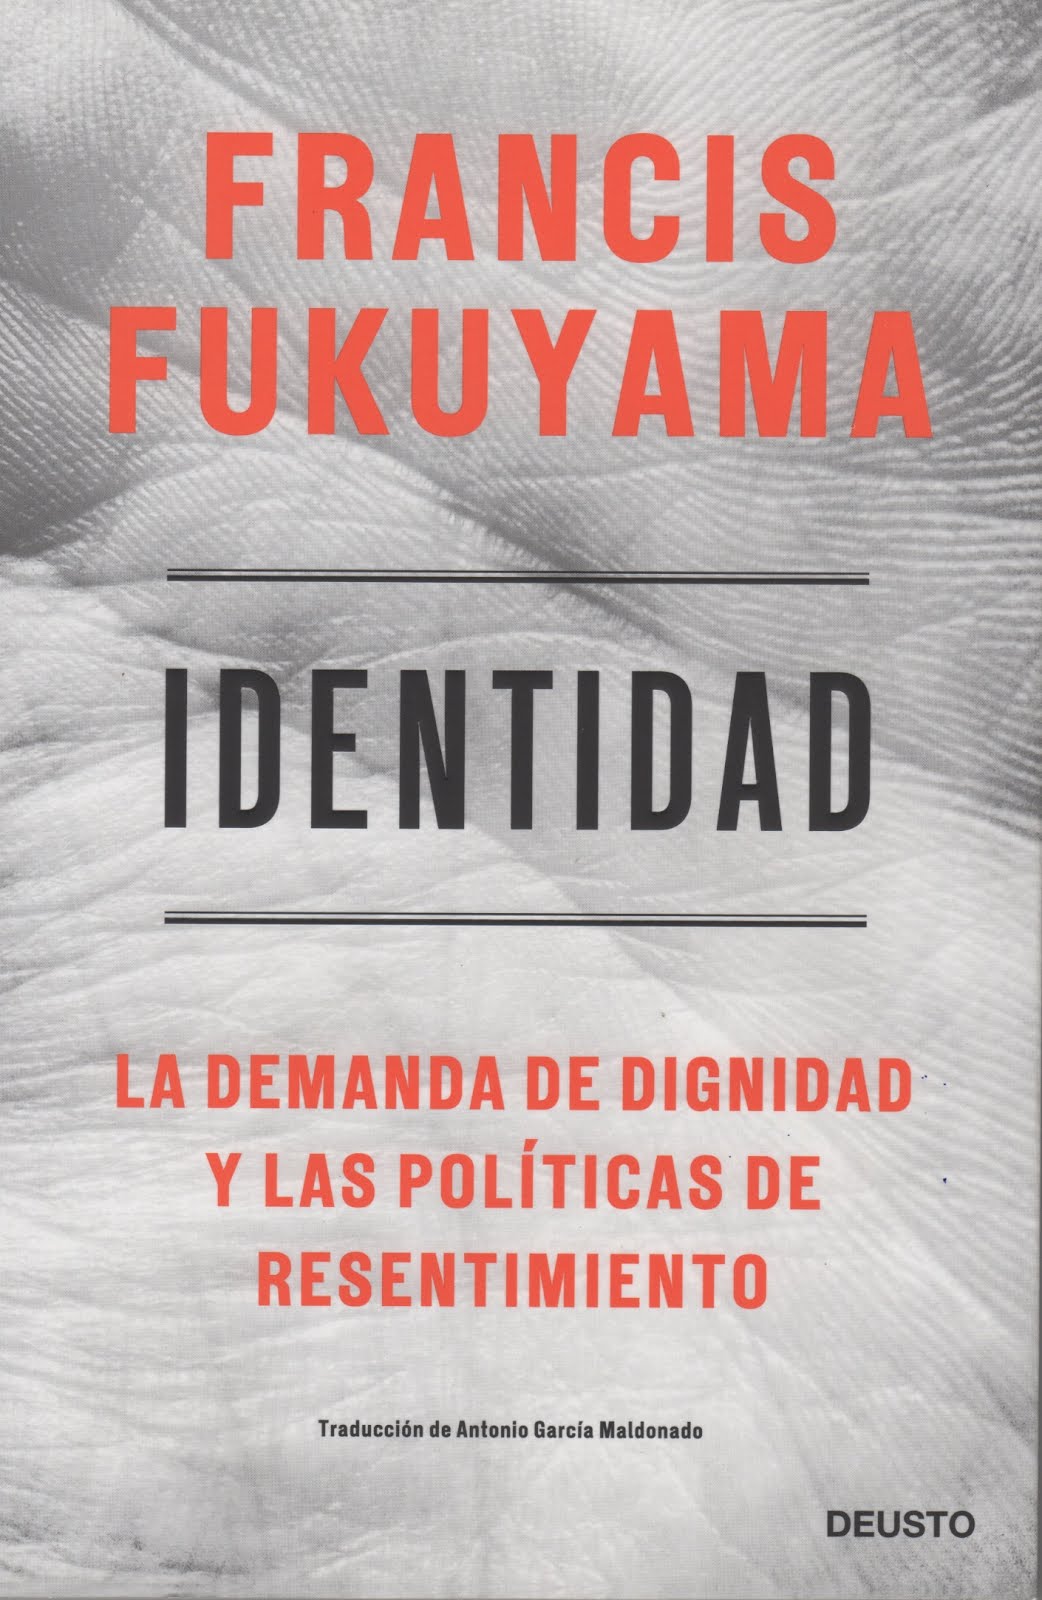 Francis Fukuyama (Identidad) La demanda de dignidad y las políticas de resentimiento